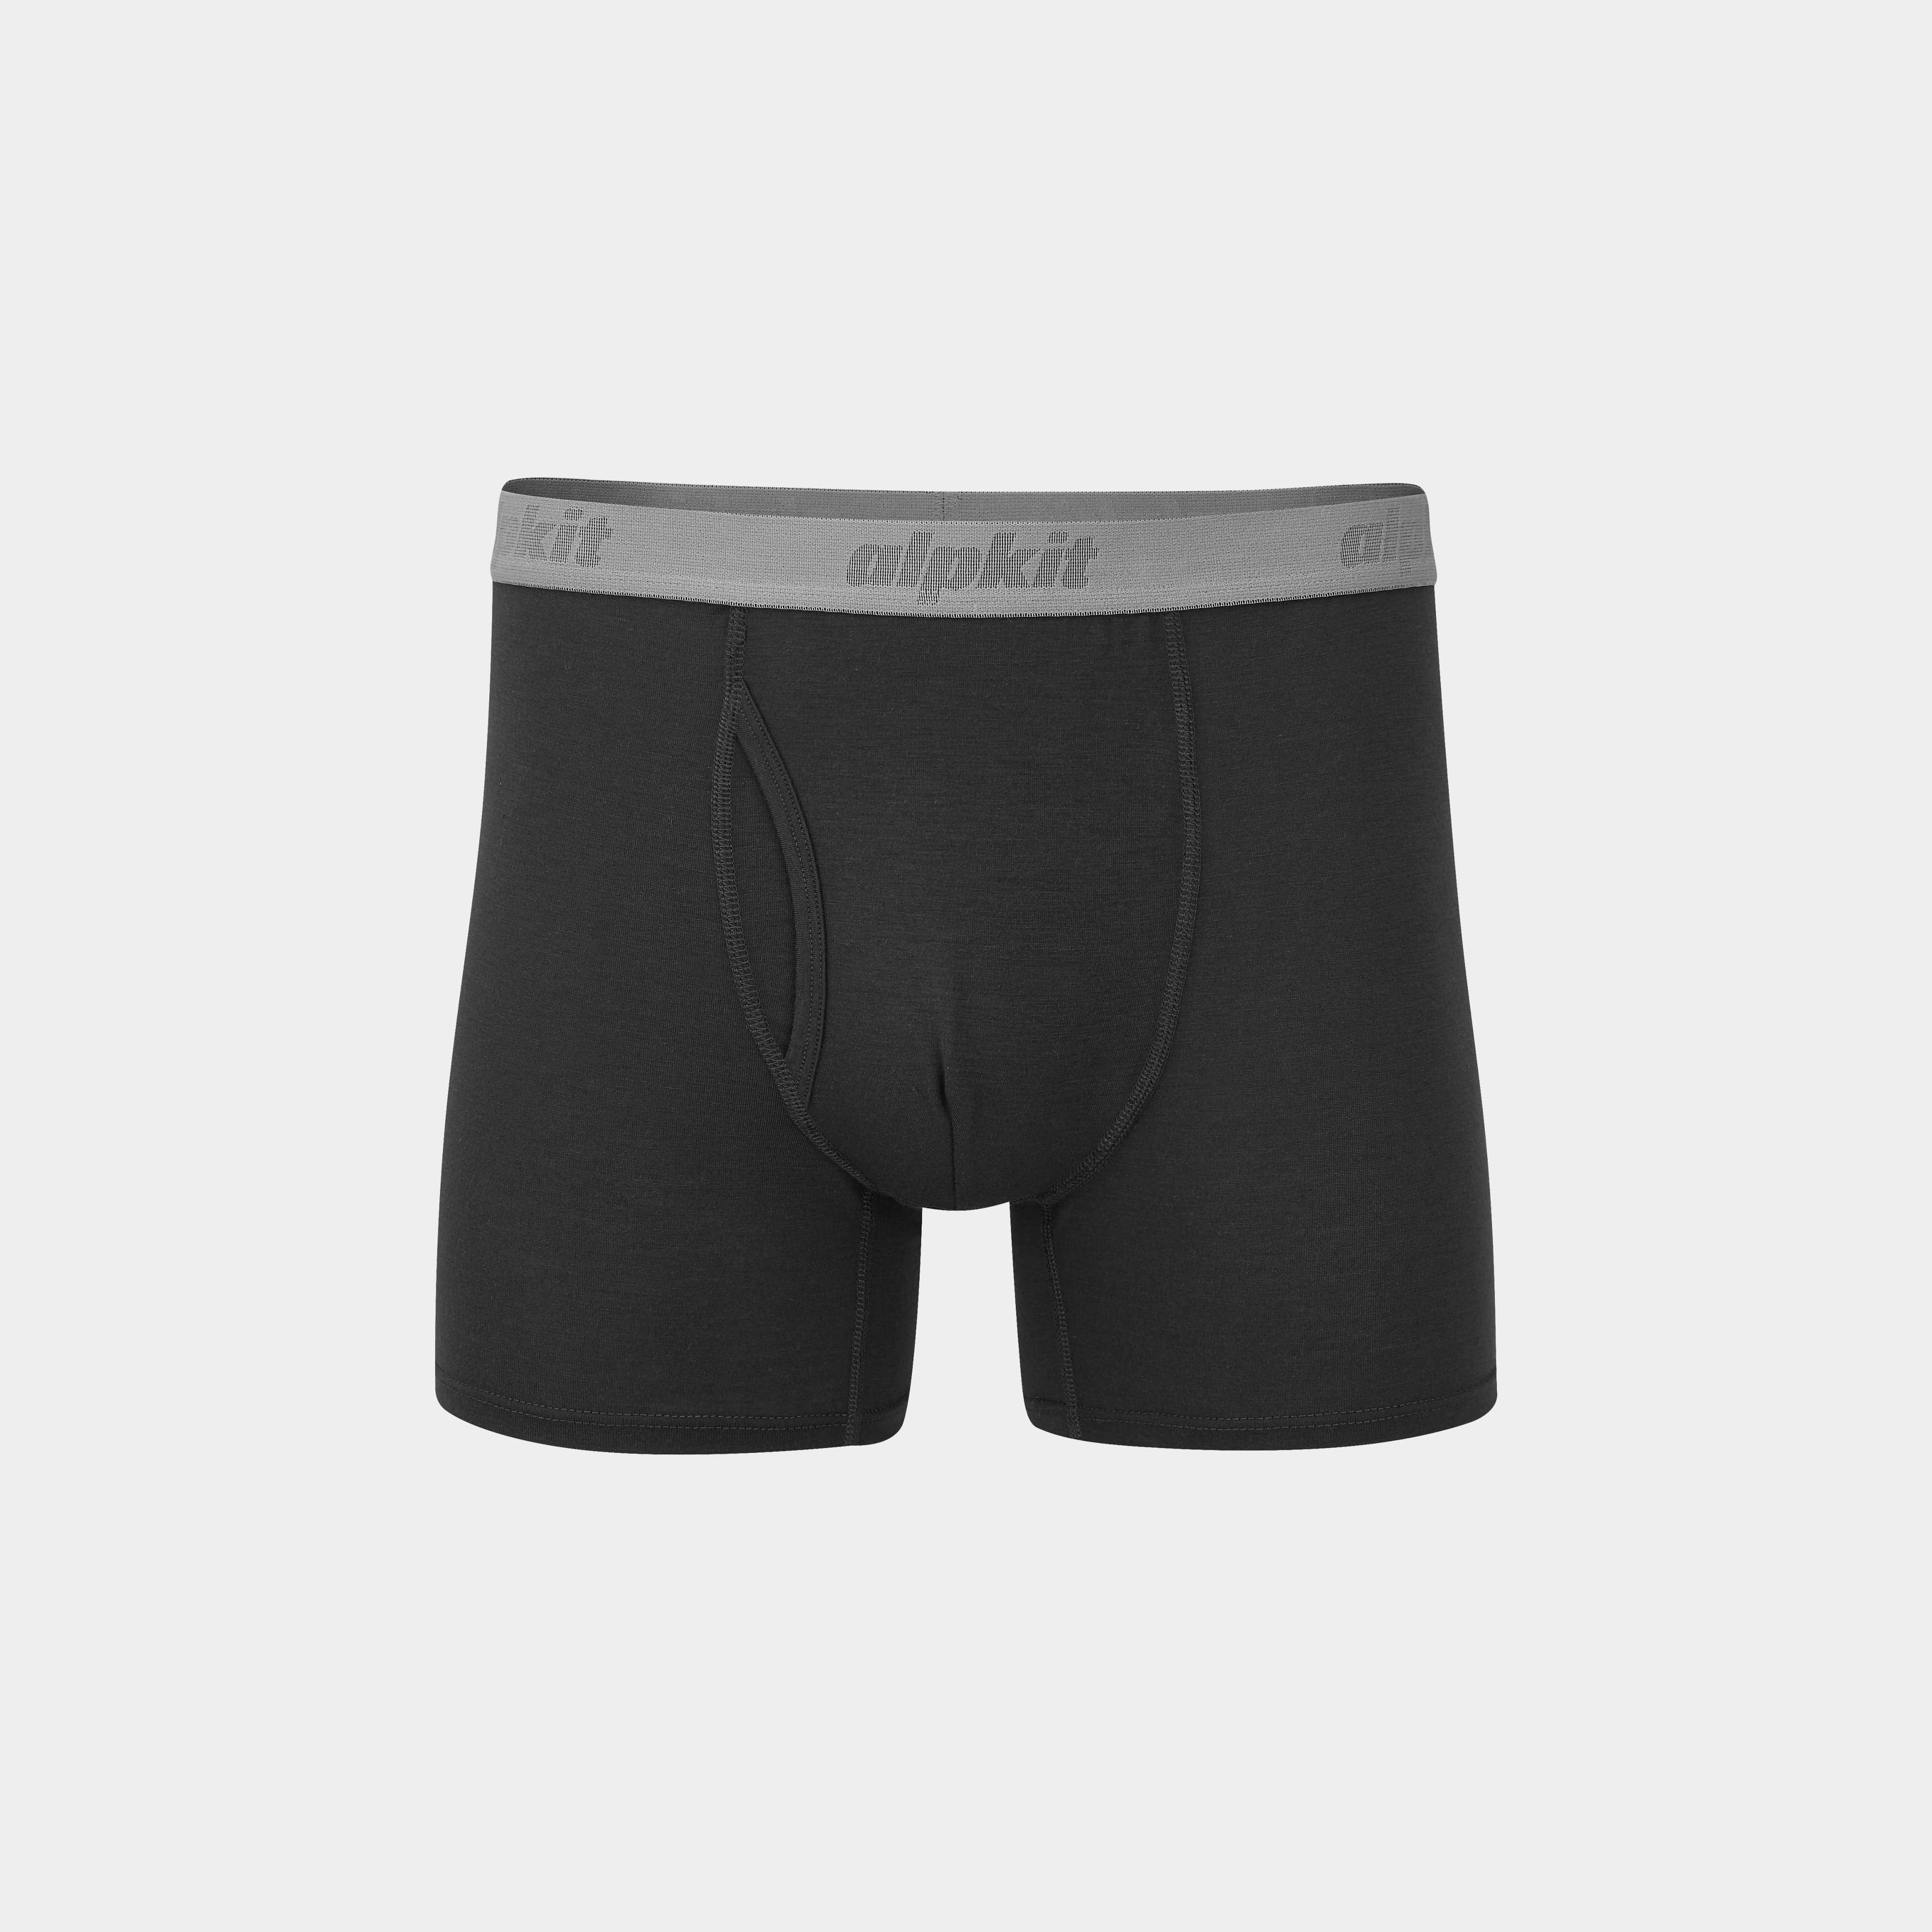 FKT Boxers Men's Moisture Wicking Underwear